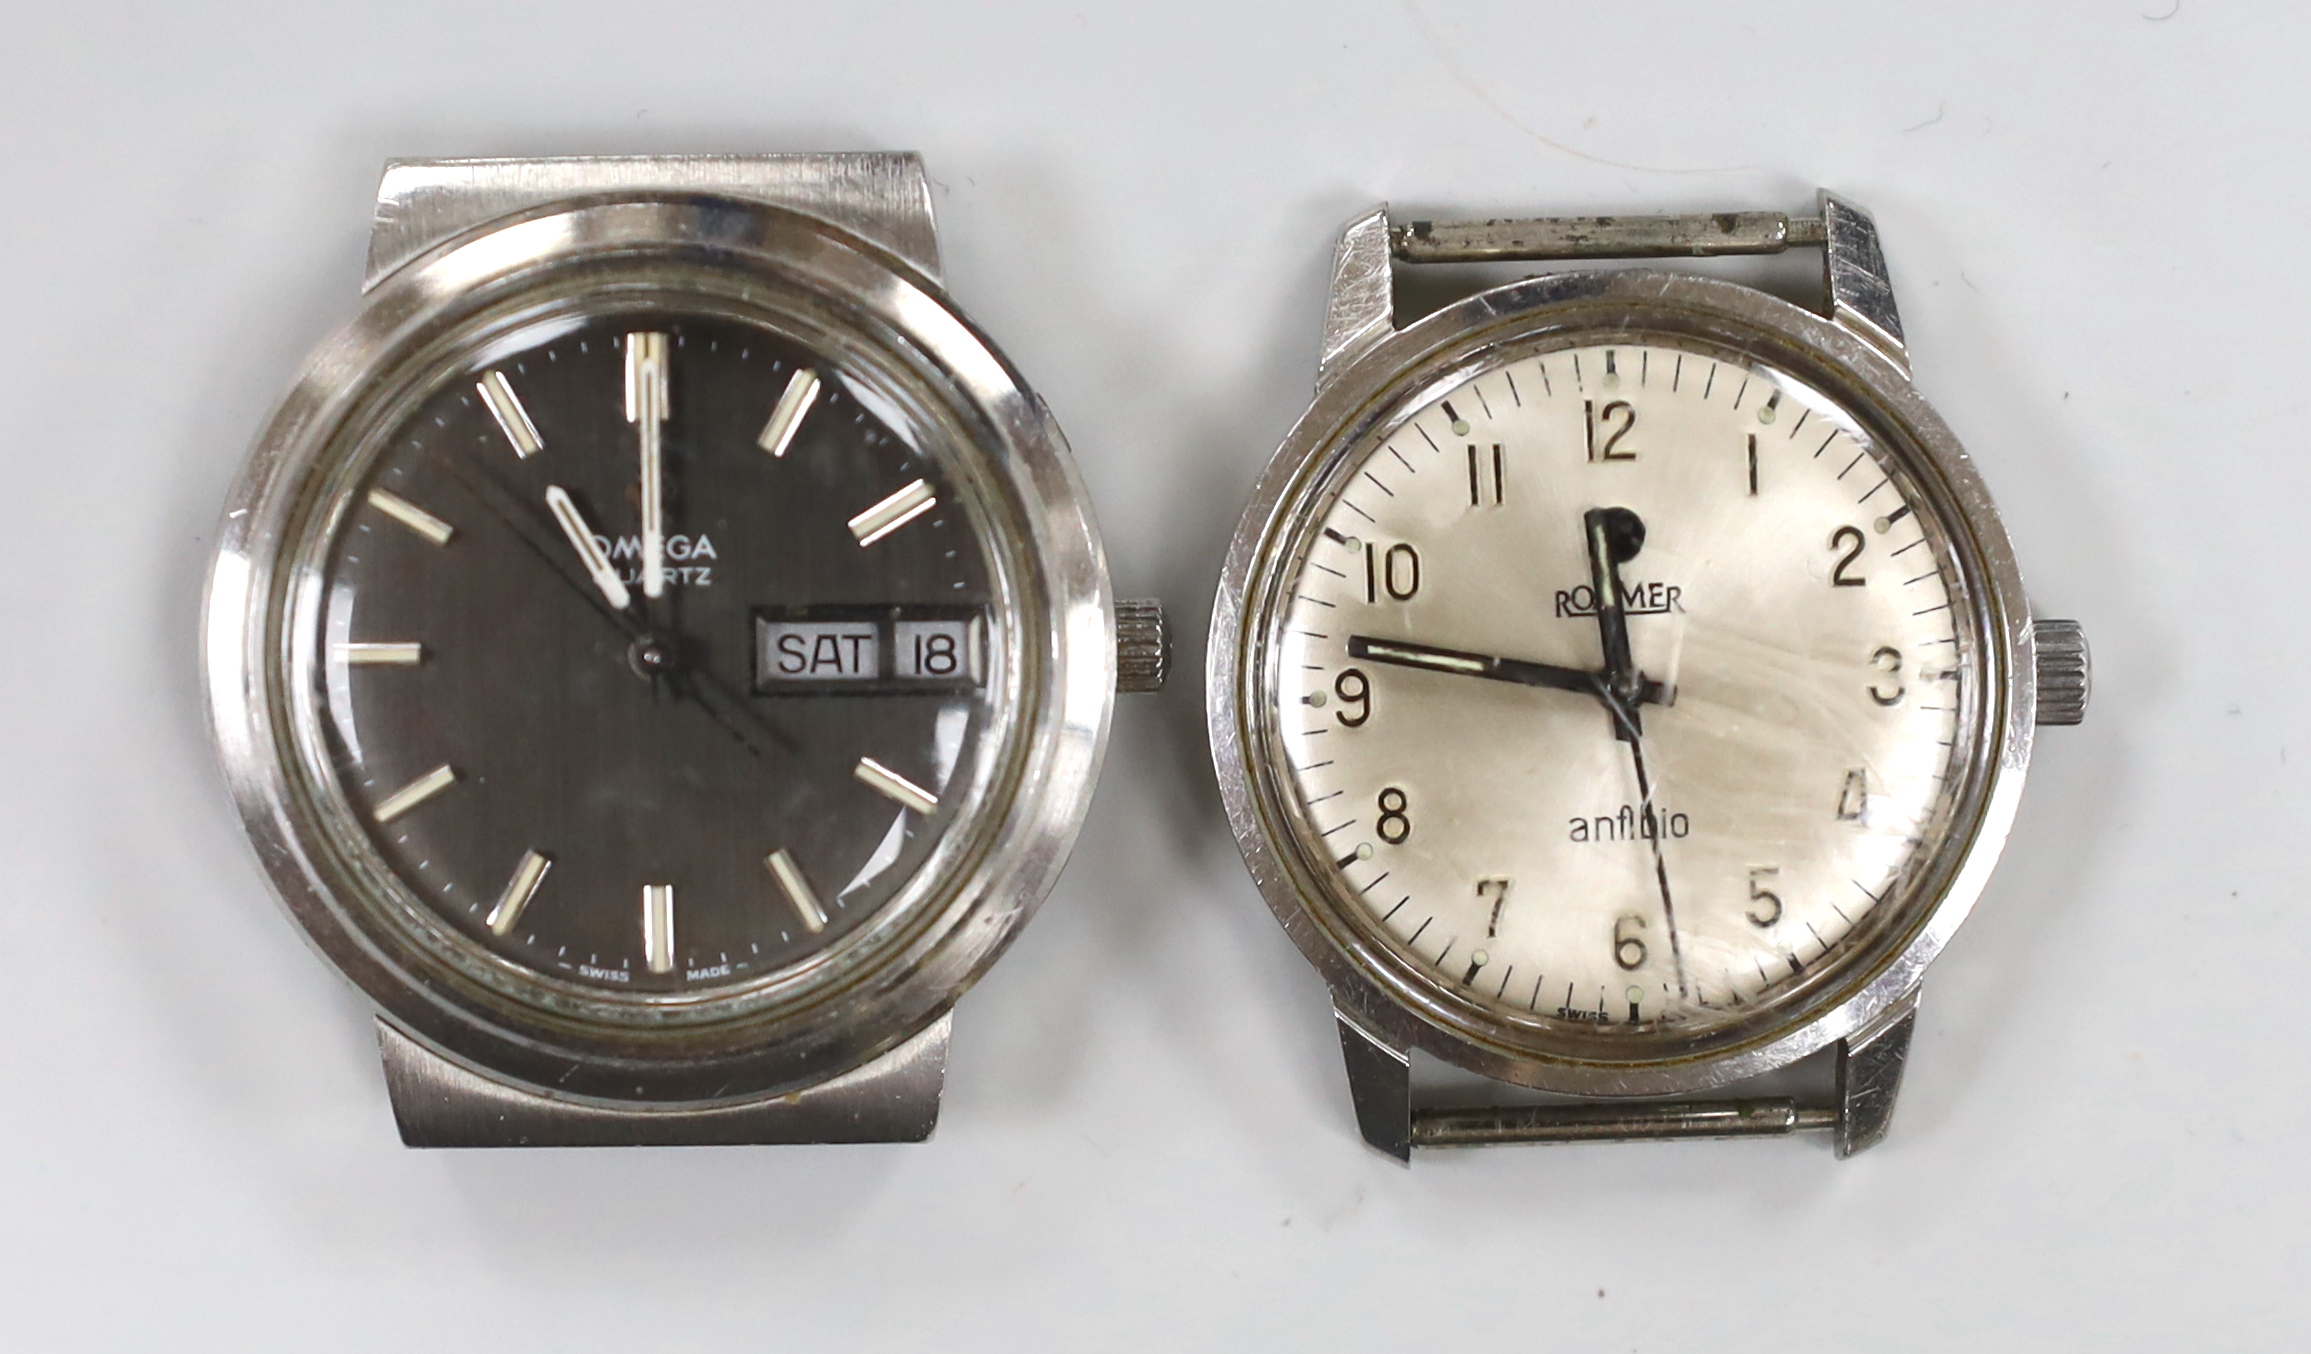 A gentleman's stainless steel Omega quartz day date wrist watch, case diameter 38mm, no strap, together with a gentleman's stainless steel Roamer manual wind wrist watch.